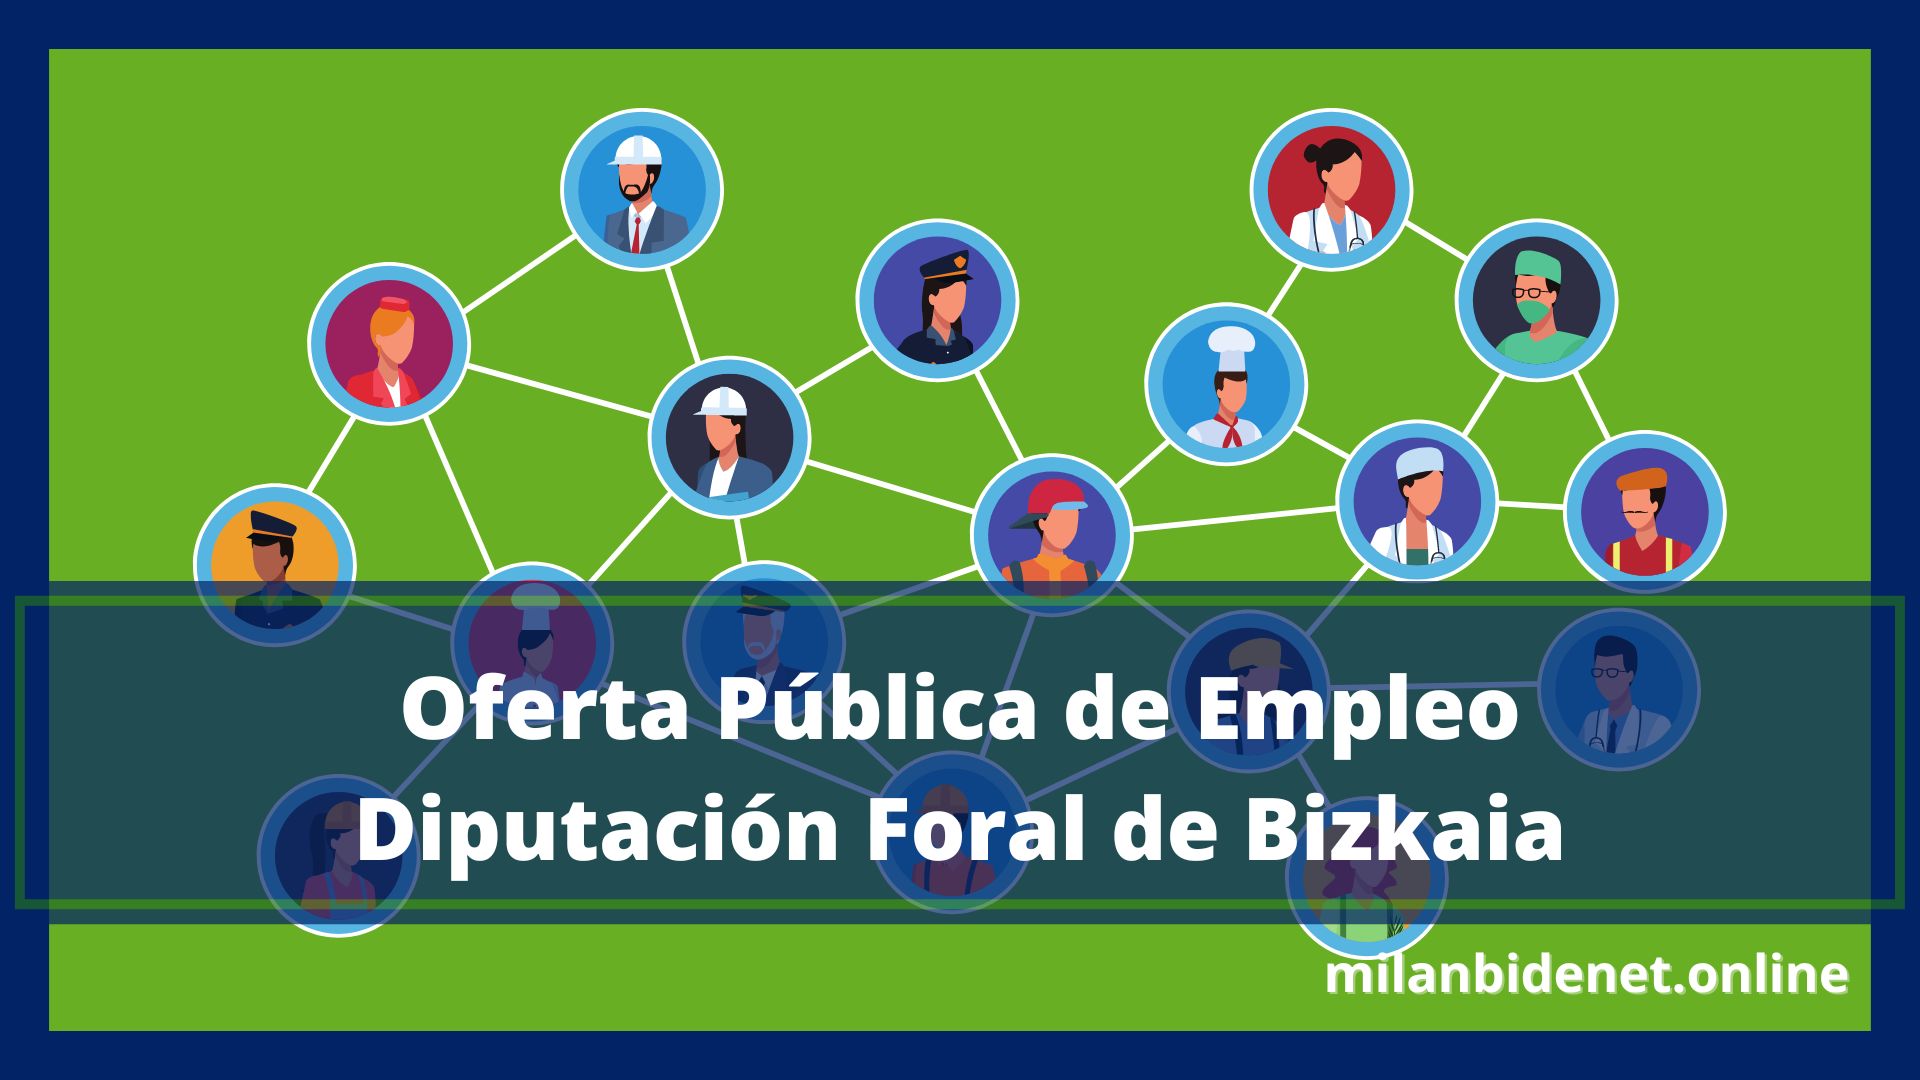 Oferta Pública de Empleo Diputación Foral de Bizkaia